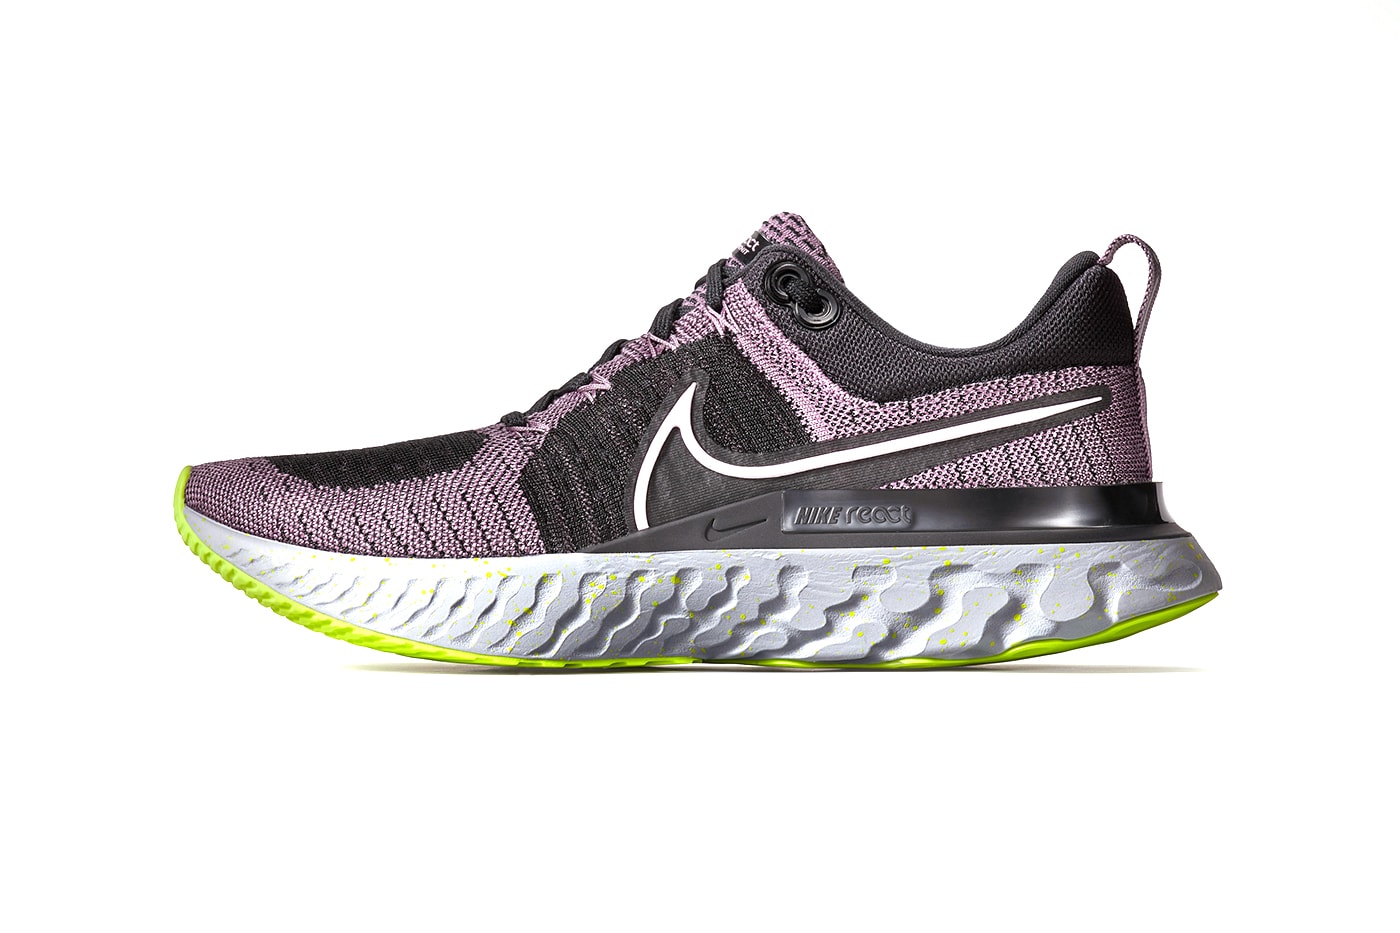 率先預覽 Nike 全新跑步鞋型 React Infinity Run 2 與 ZoomX Invincible Run